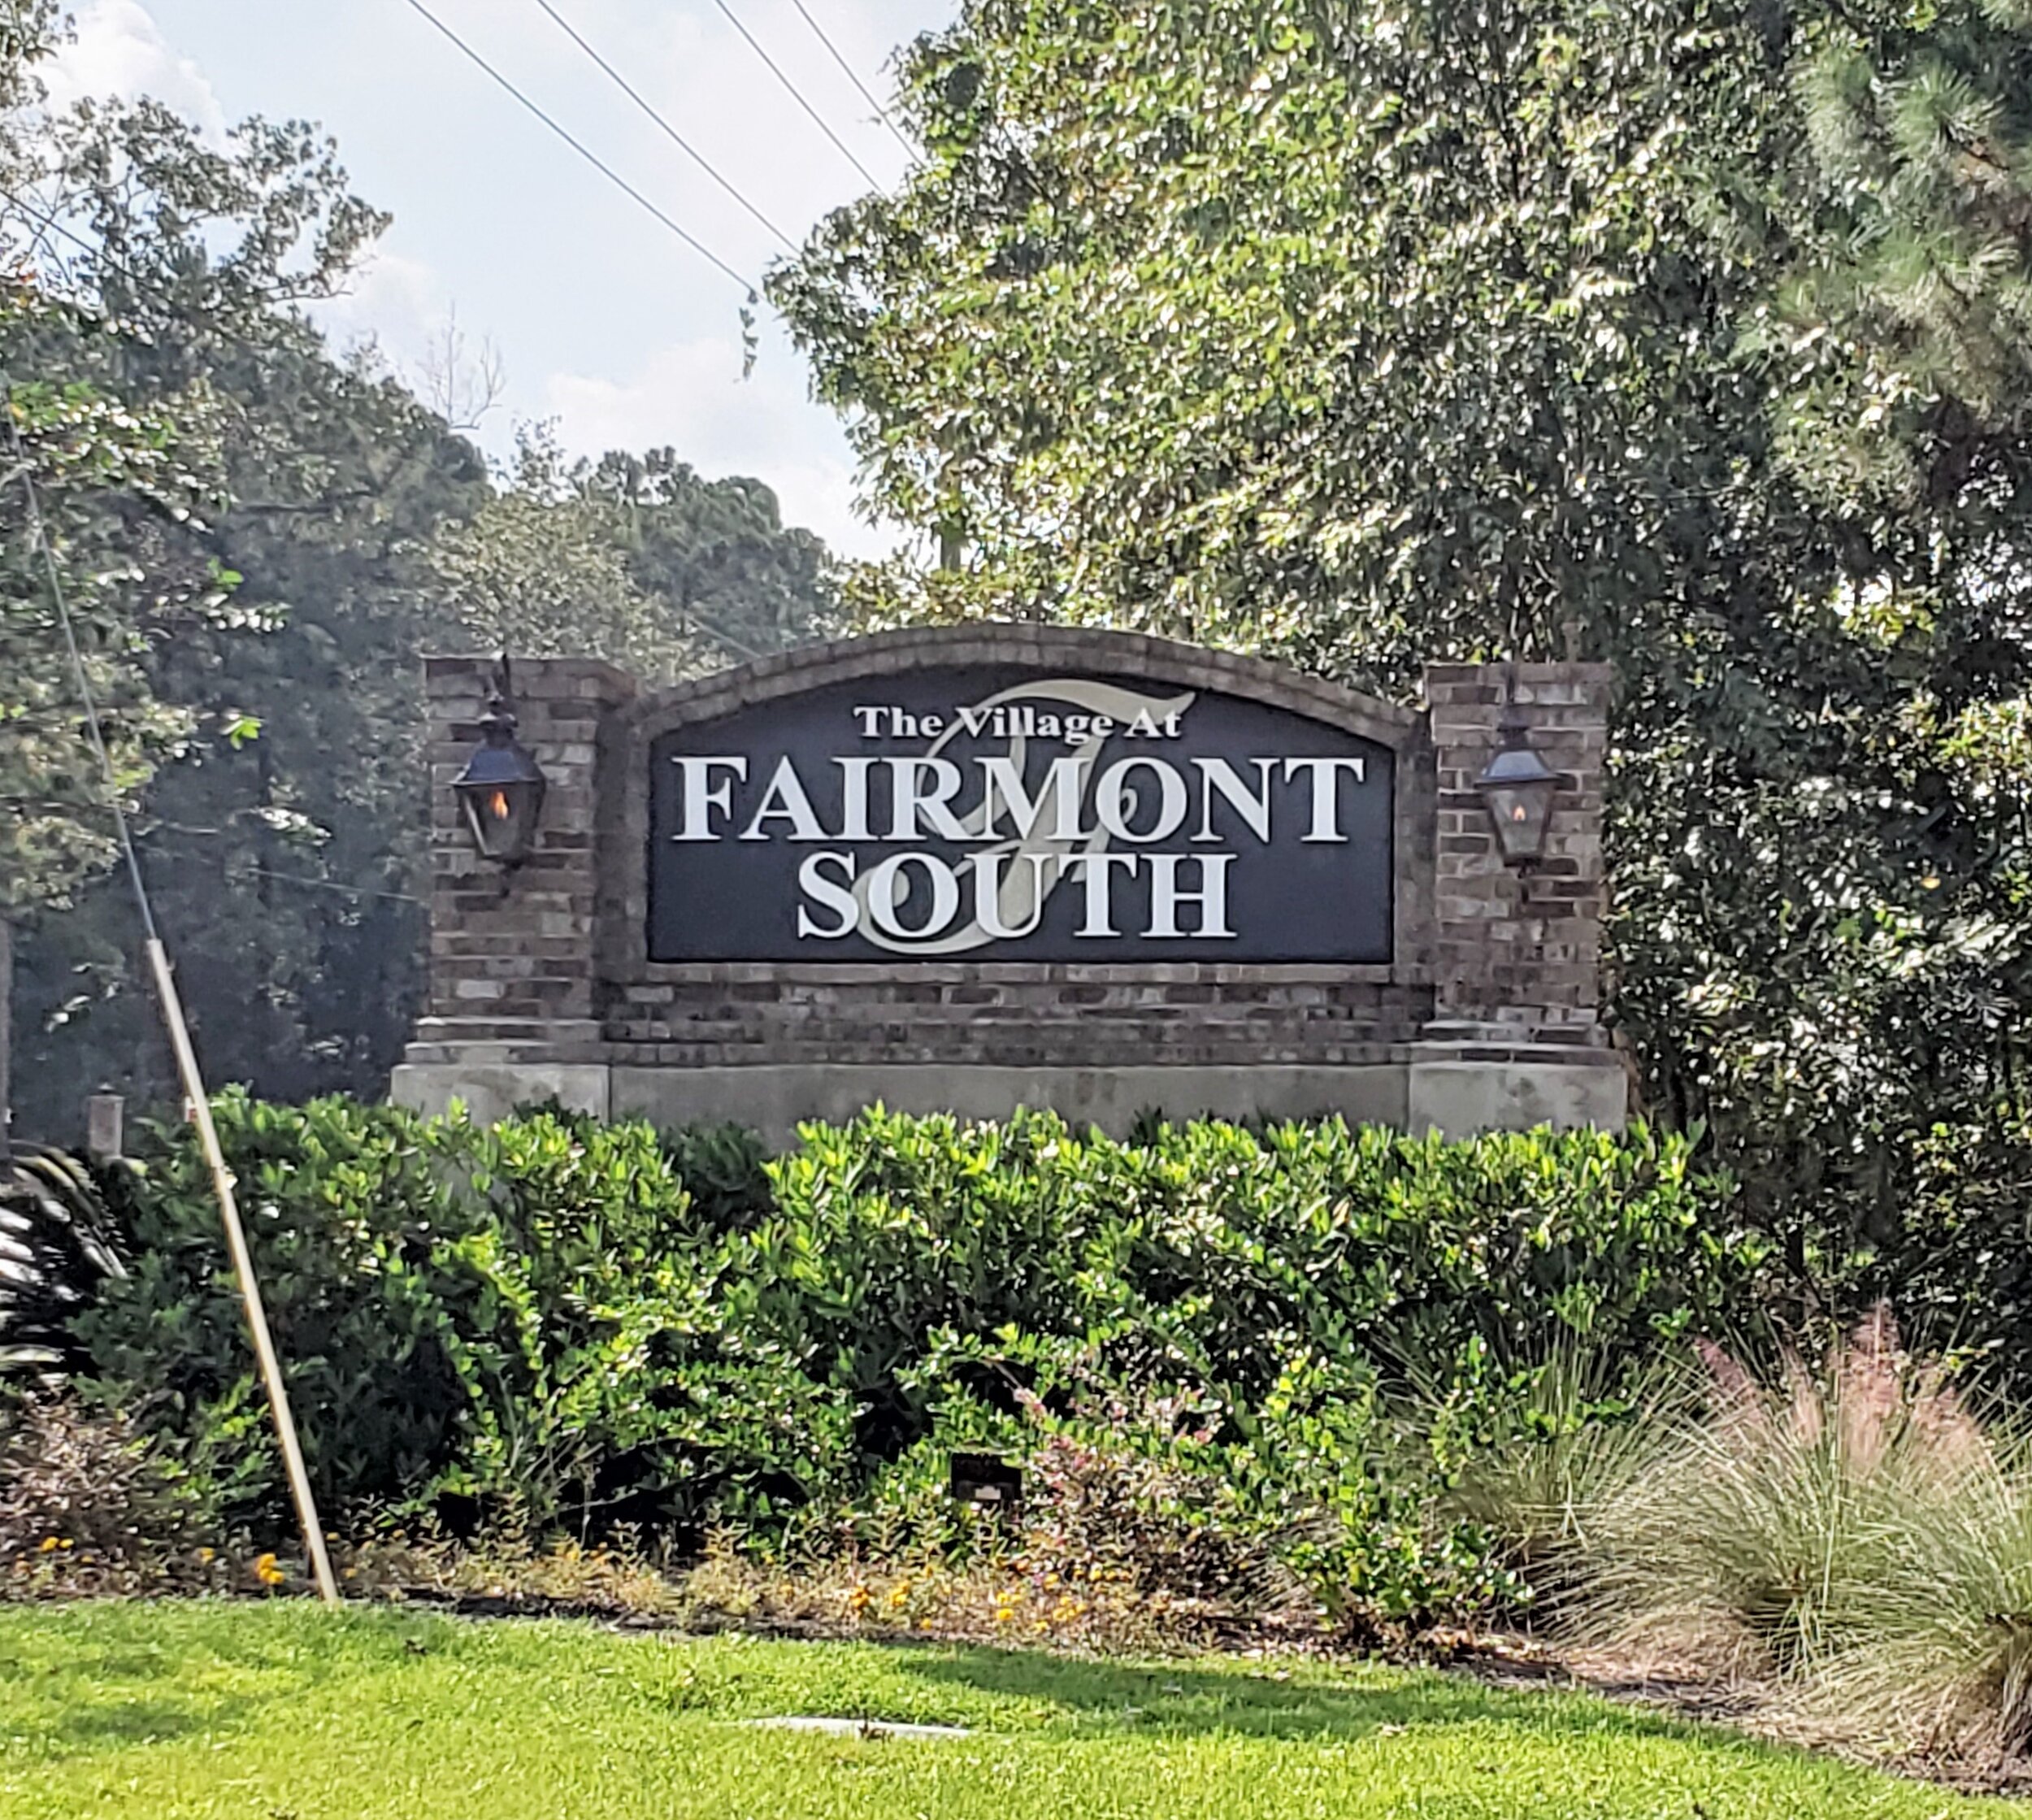 South Fairmont